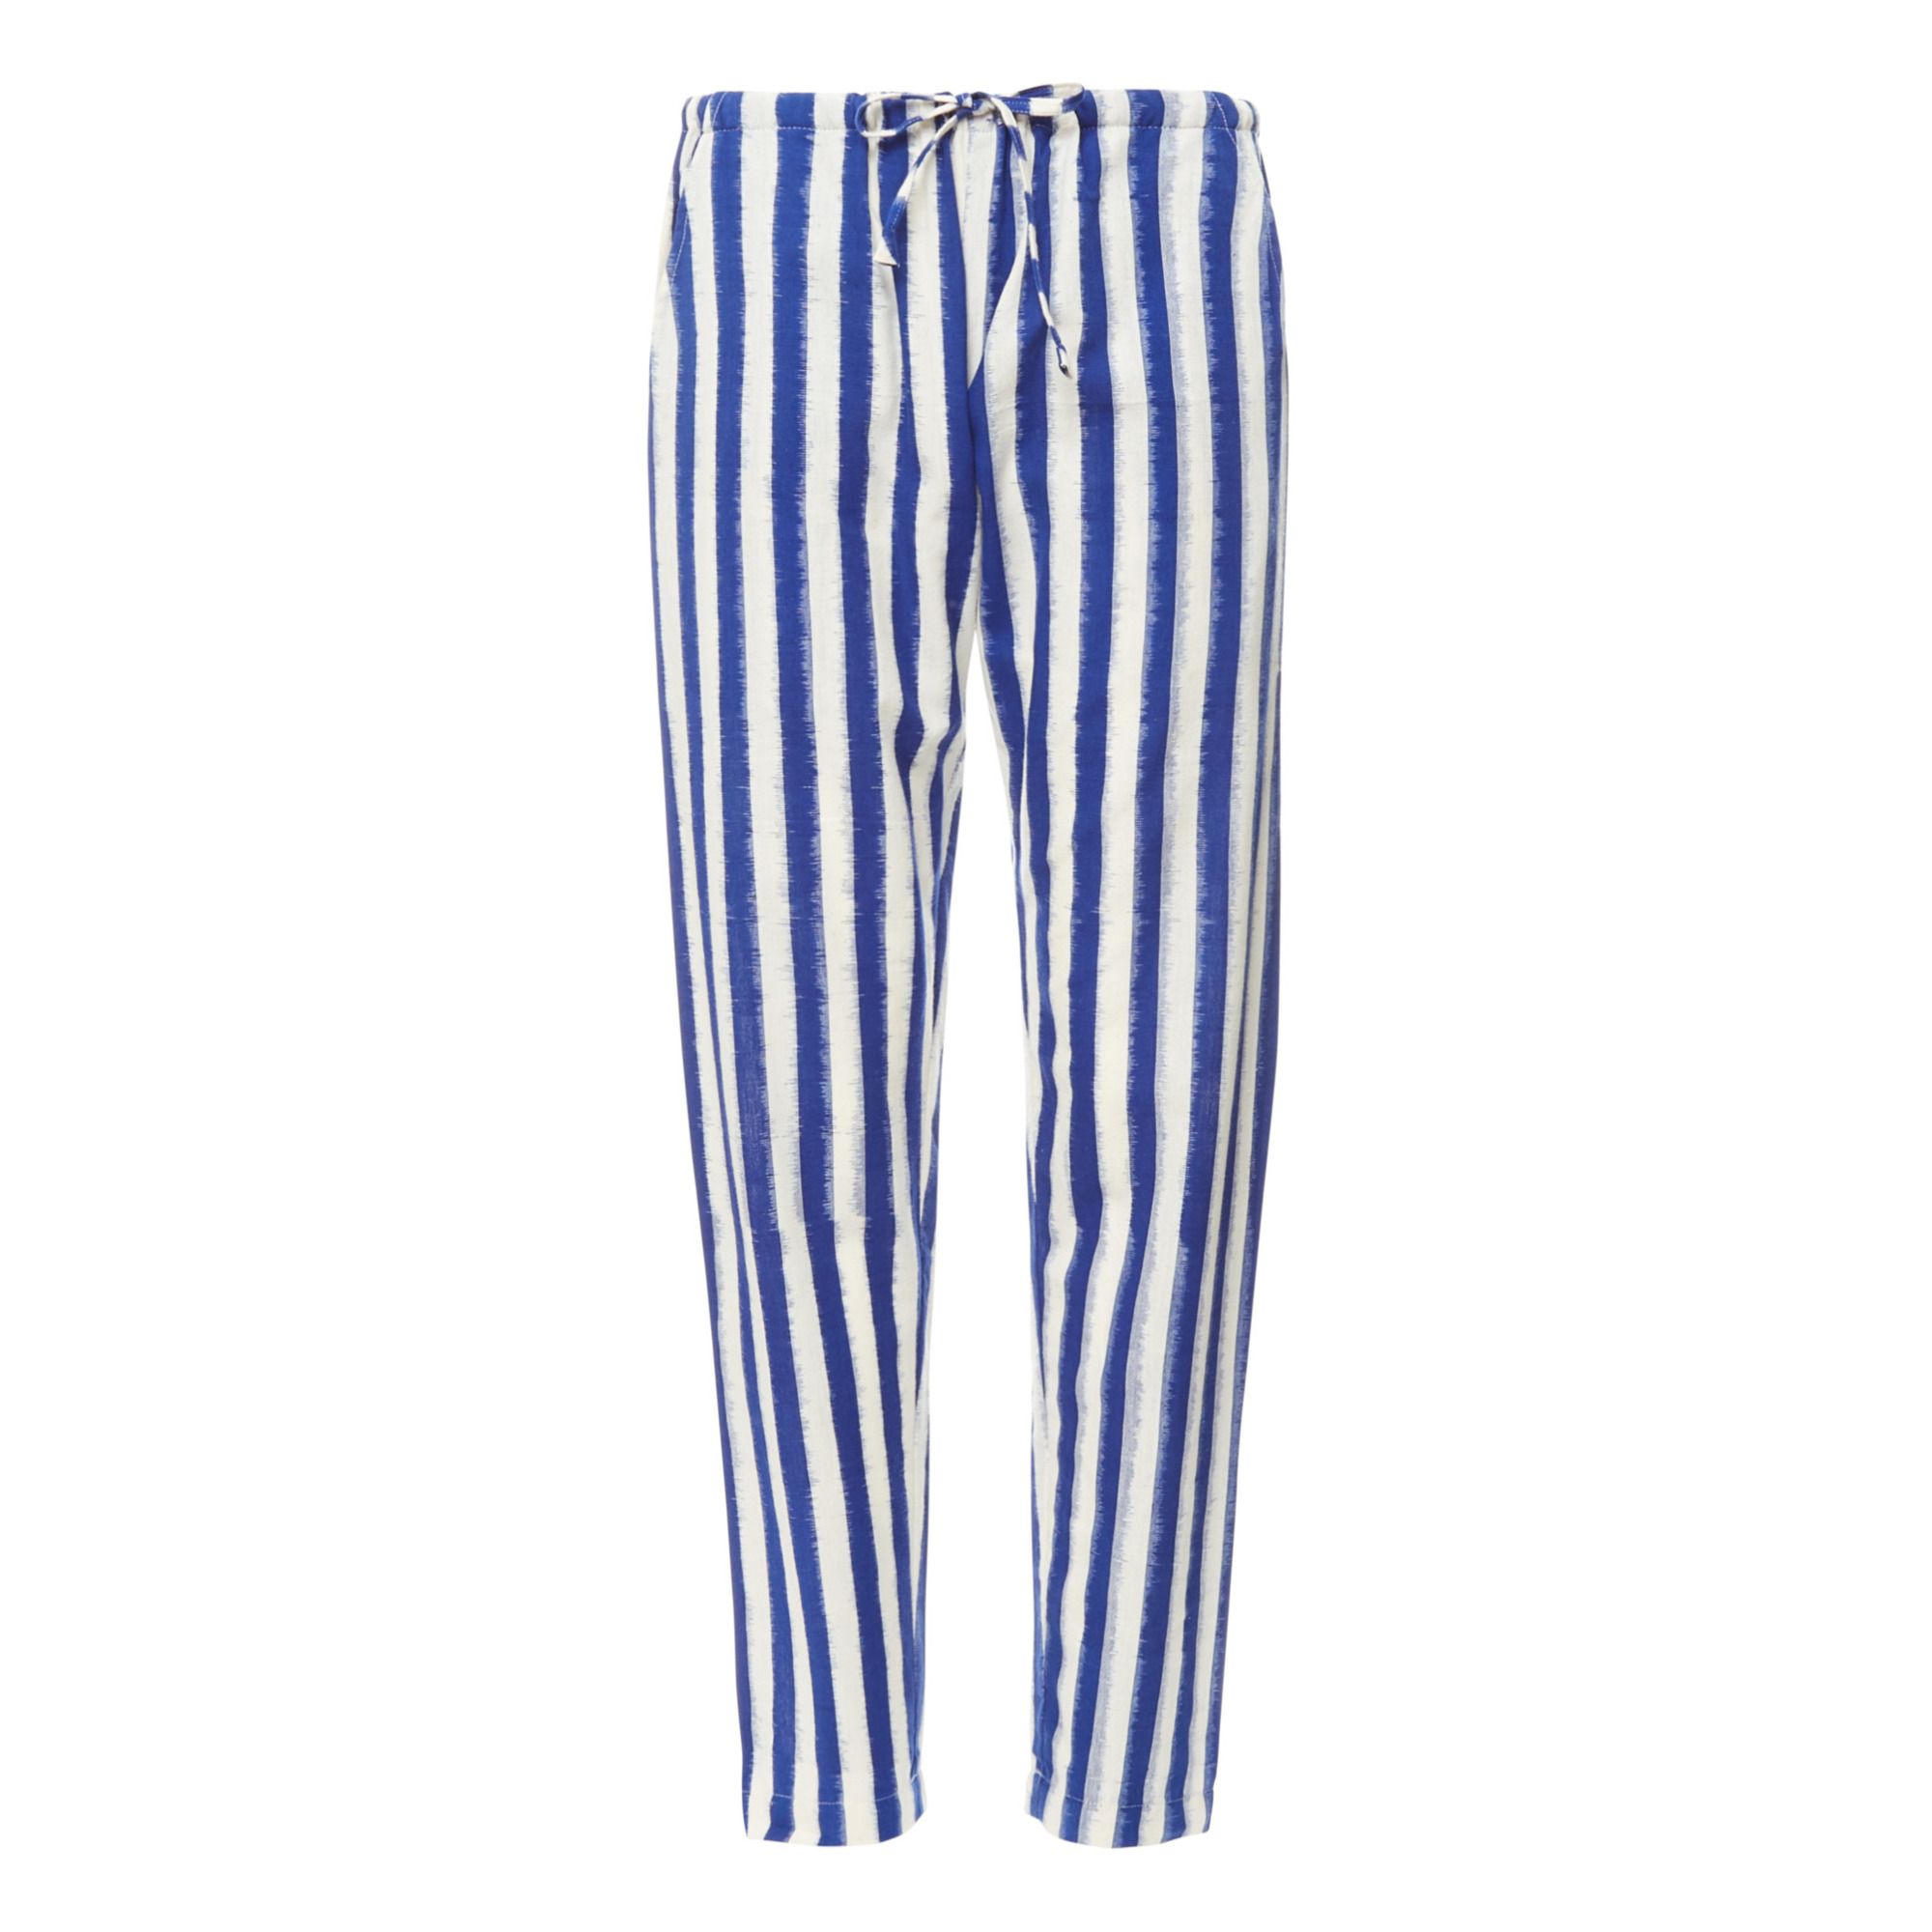 Le Petit Lucas du Tertre - Pantalon Ikat - Collection Femme - - Bleu